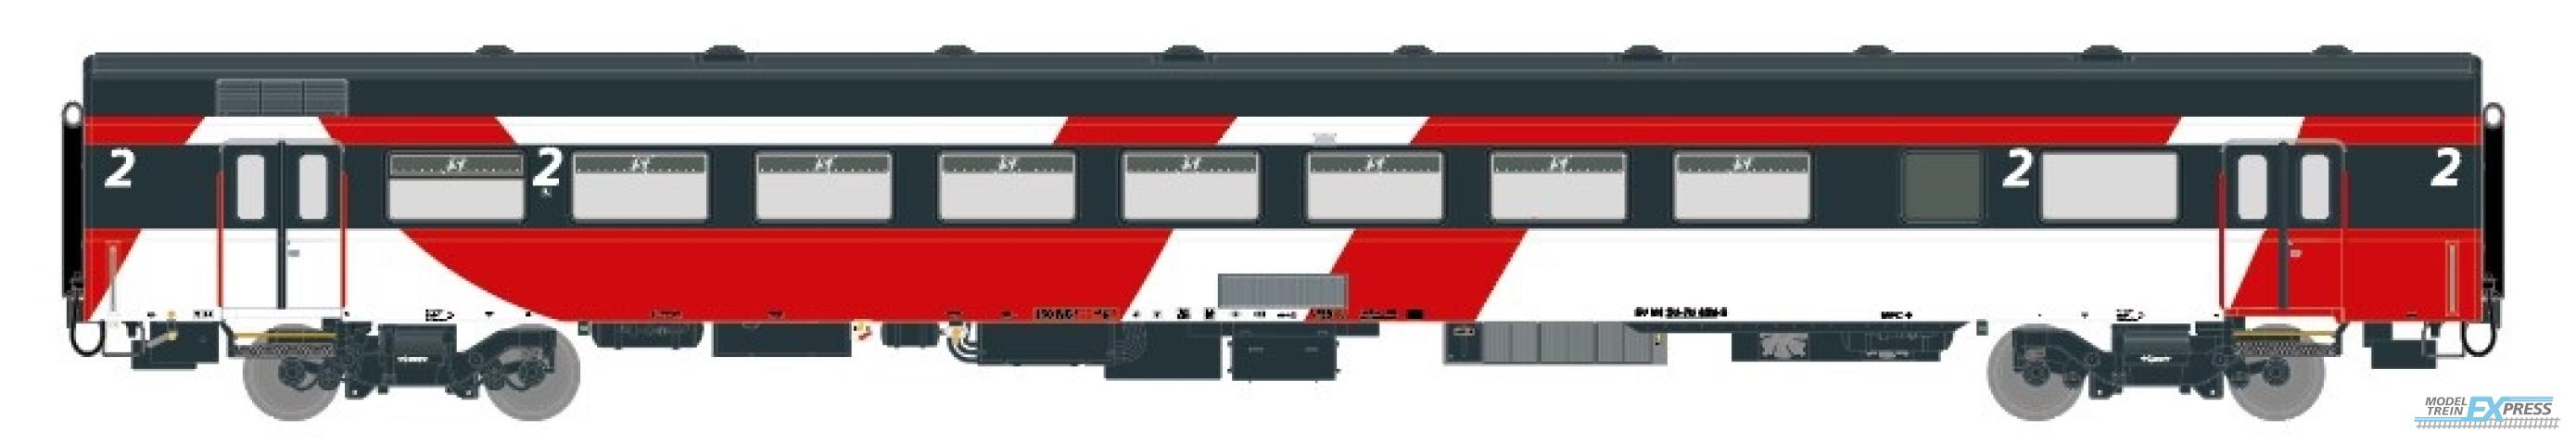 Exact-train 11133 NS ICRm Hispeed 1 (Amsterdam - Brussel) für die Hsl-Strecke eingesetzt Gepäckwagen Bd(Rot/Rose/Weiss), Ep. V